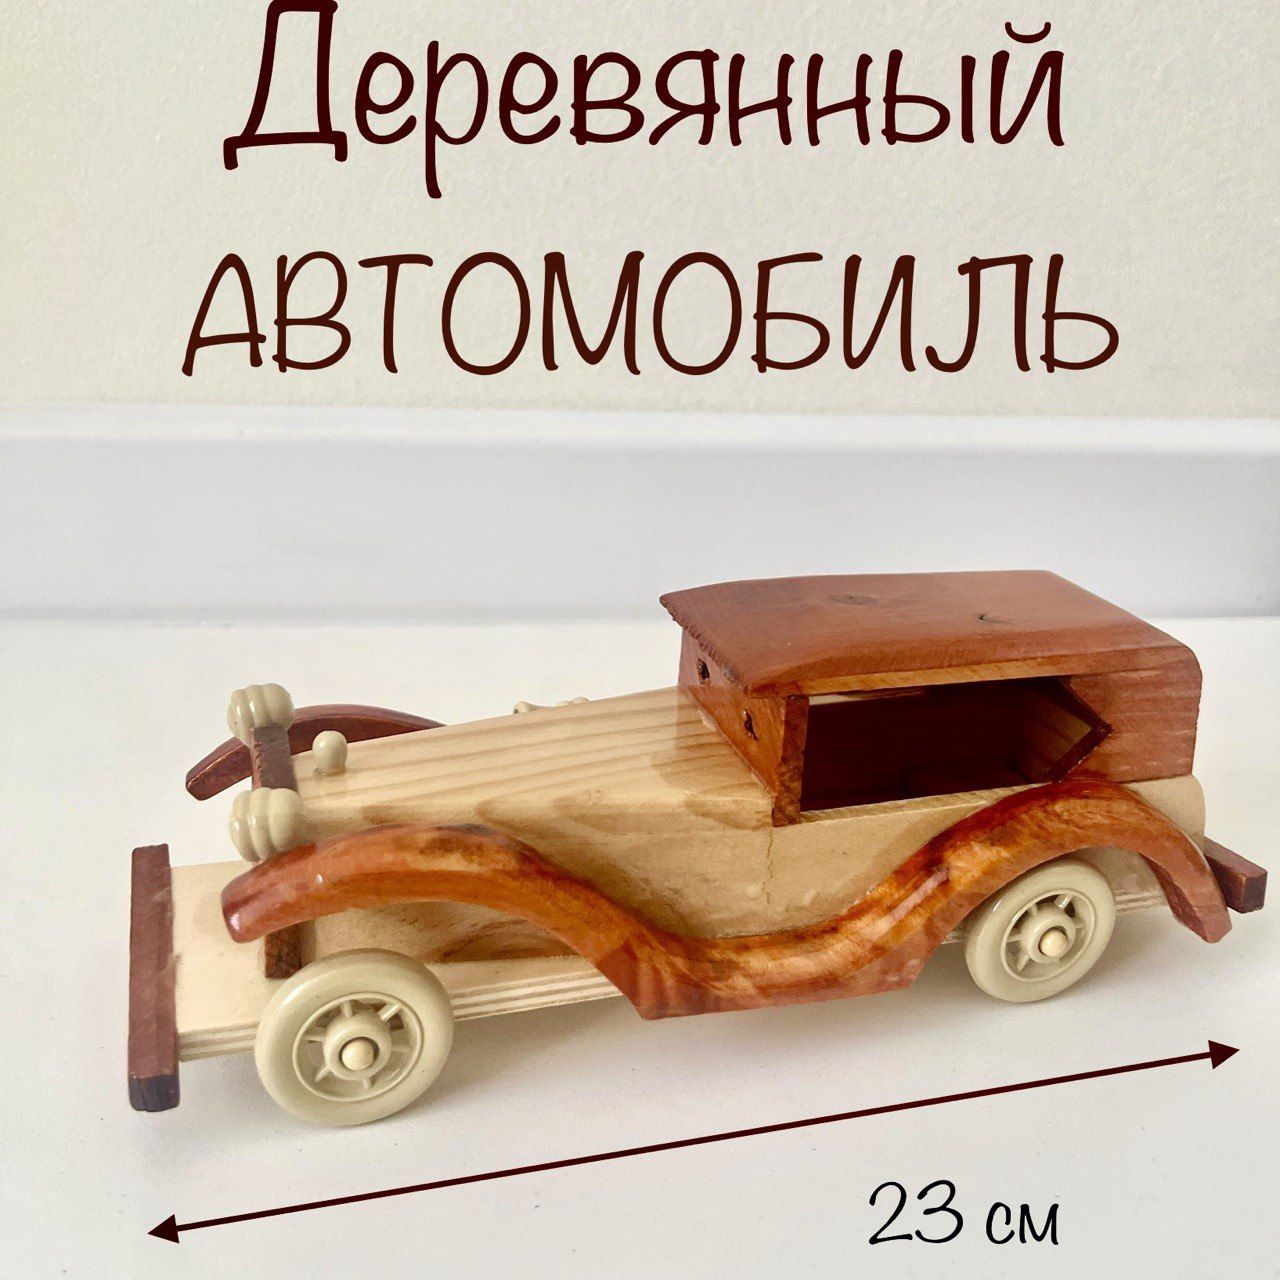 Игрушка дерево «Автомобили» купить за рублей - Podarki-Market